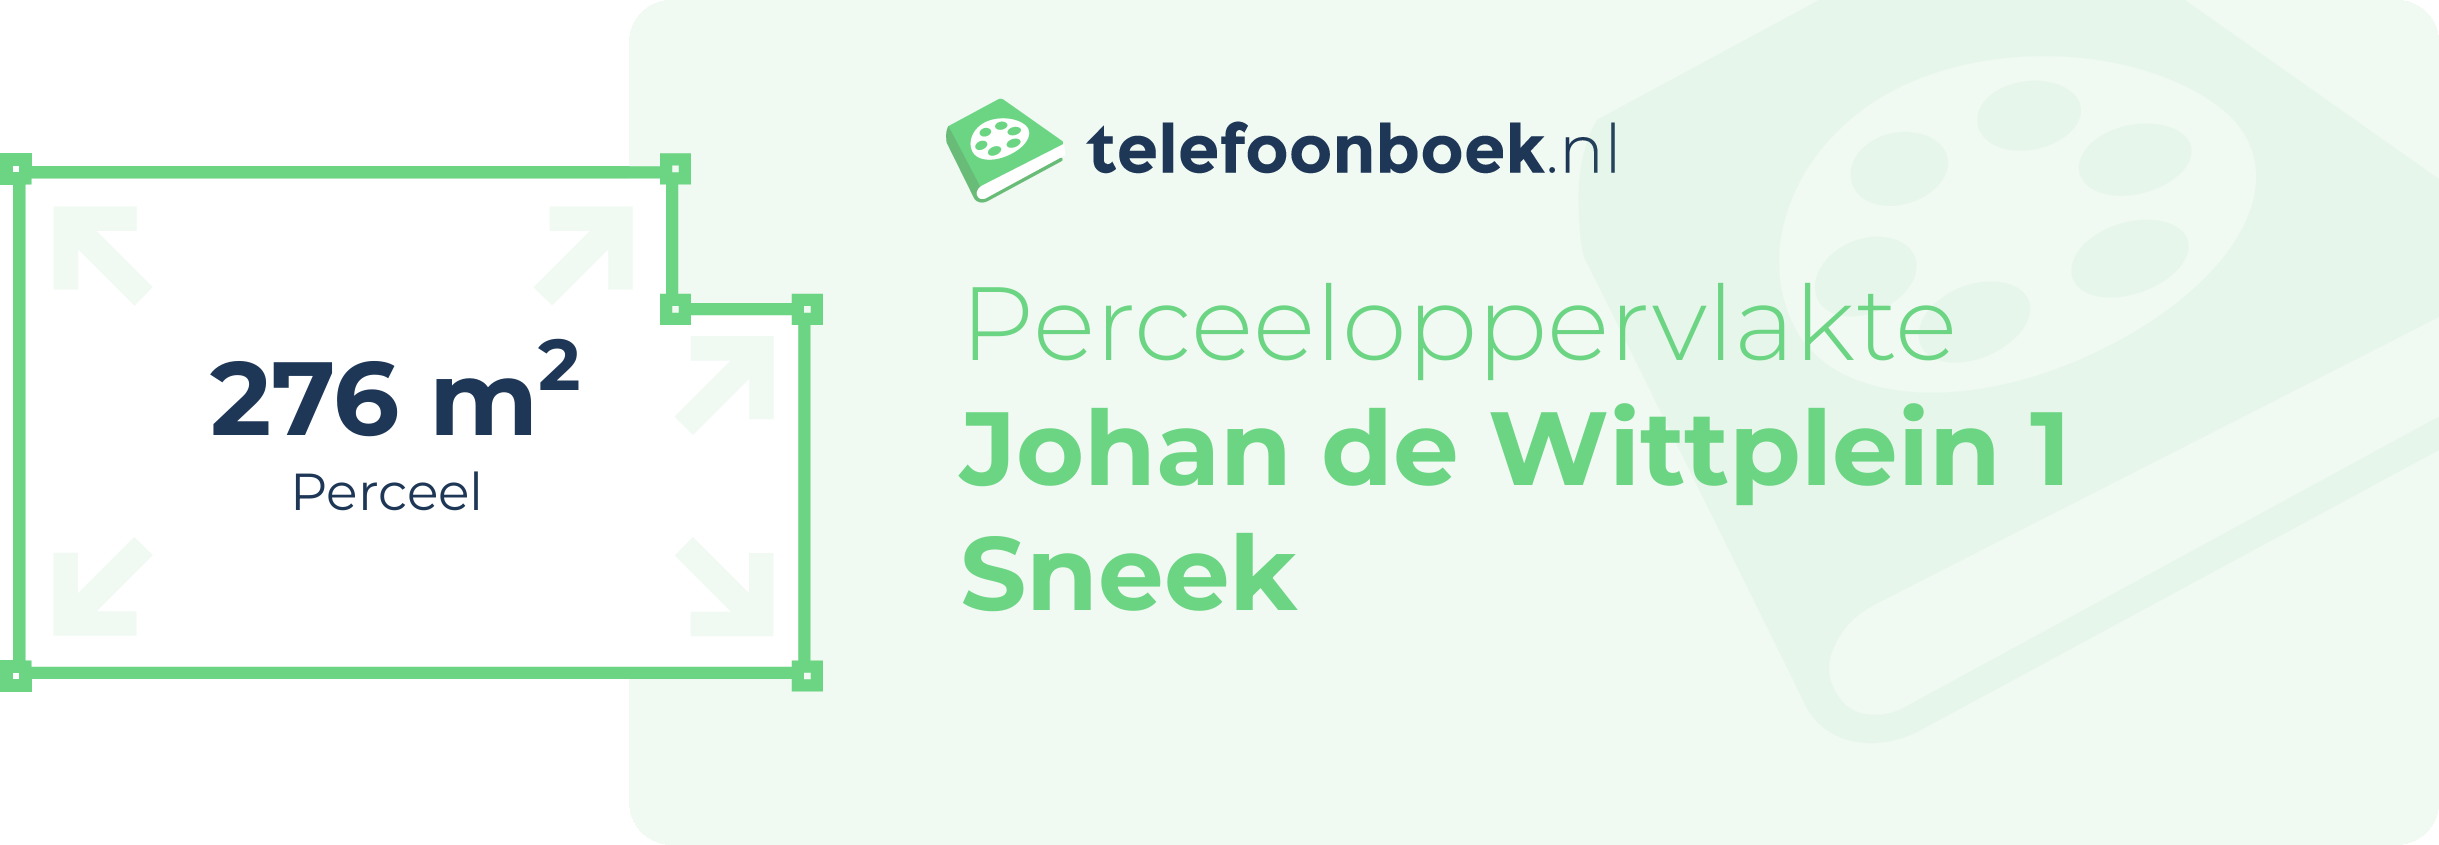 Perceeloppervlakte Johan De Wittplein 1 Sneek